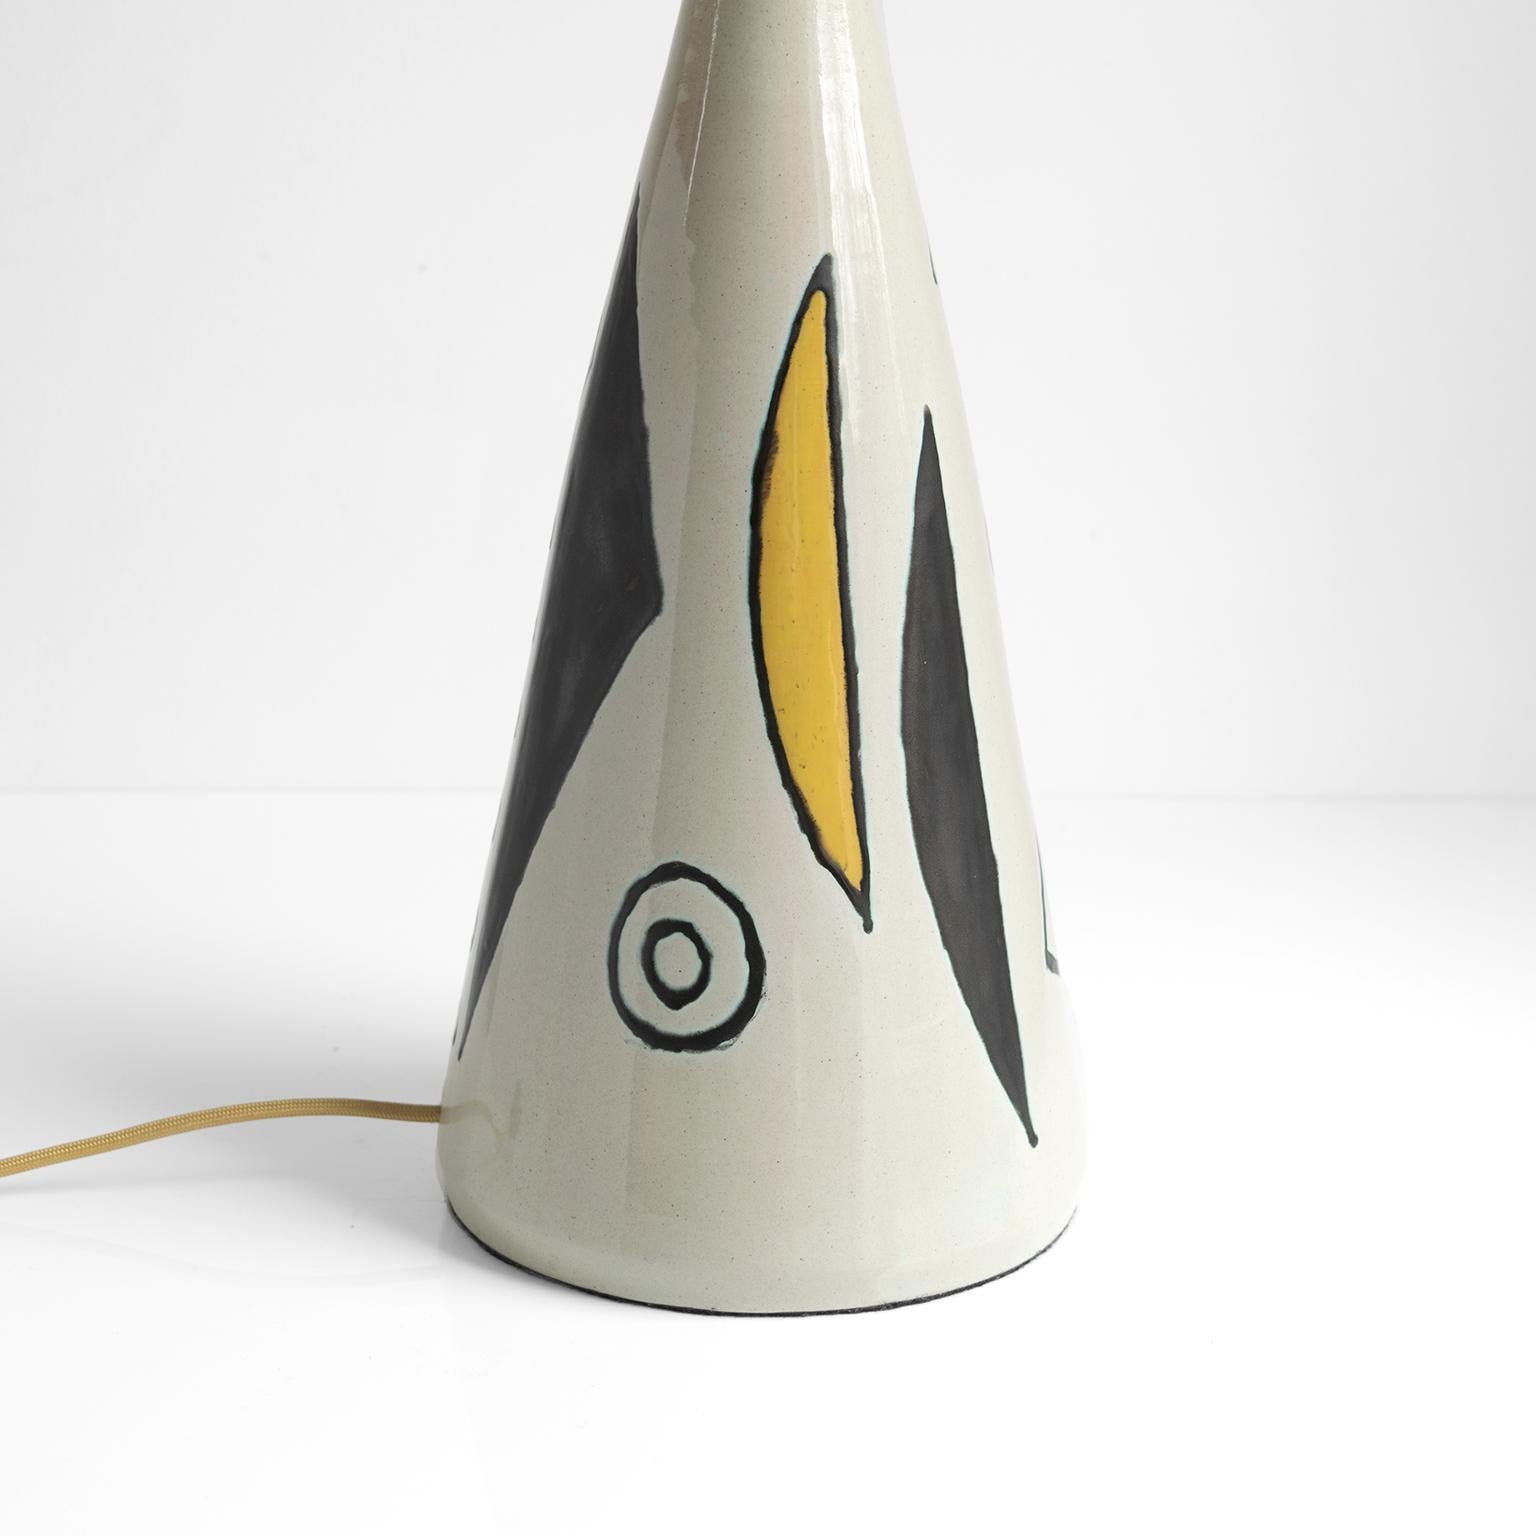 Axel Bruel Scandinavian Modern Ceramic Lamp, Denmark, 1950's For Sale 3